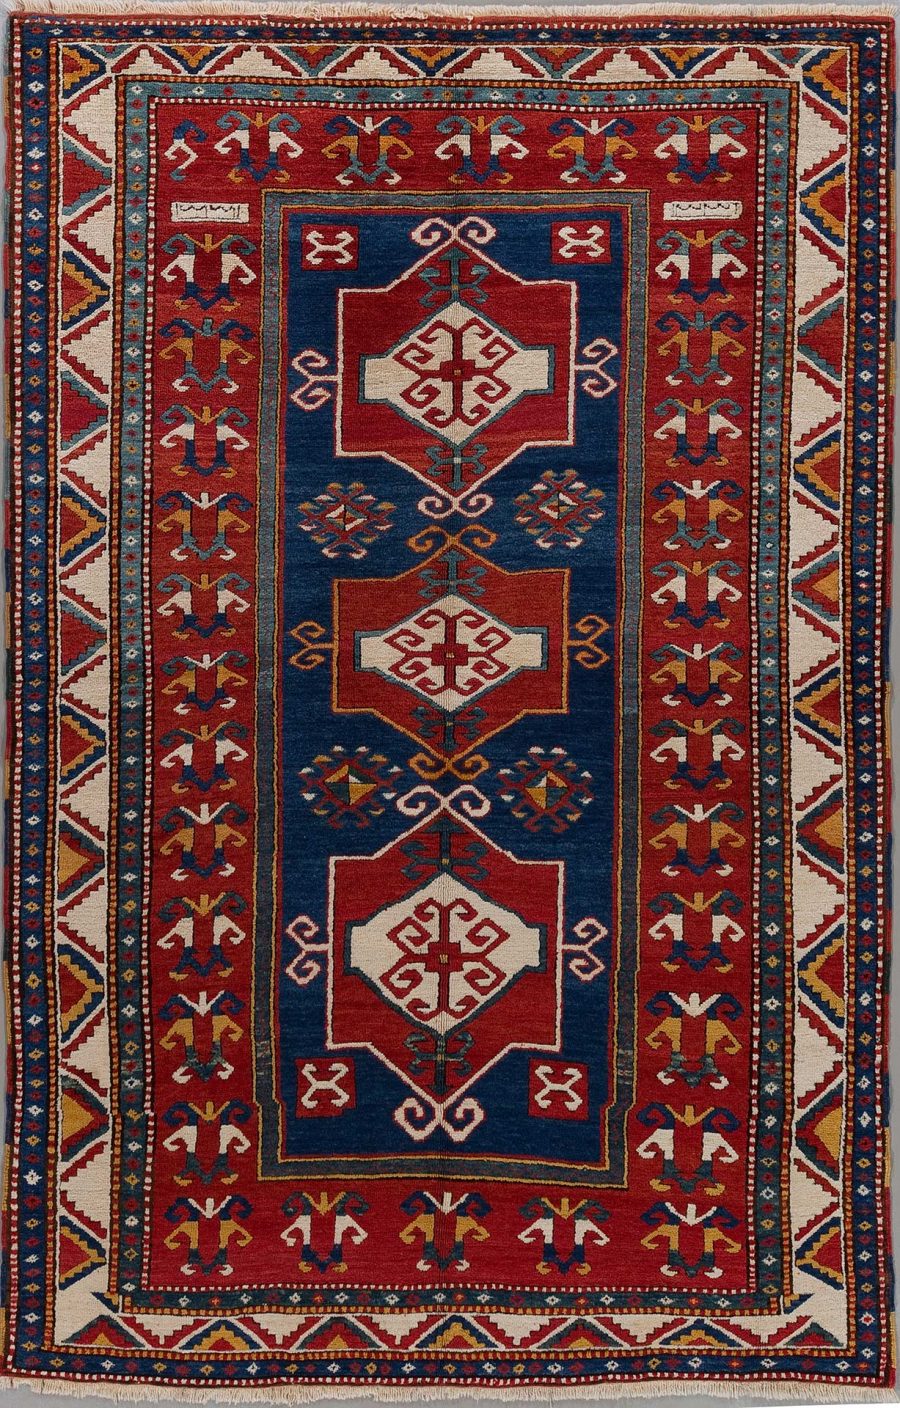 Handgeknüpfter orientalischer Teppich mit detailliertem Muster, dominierenden Farben in Dunkelblau und Rot, umrandet von einem dekorativen Bordüren-Design und mehreren zentralen geometrischen Motiven.